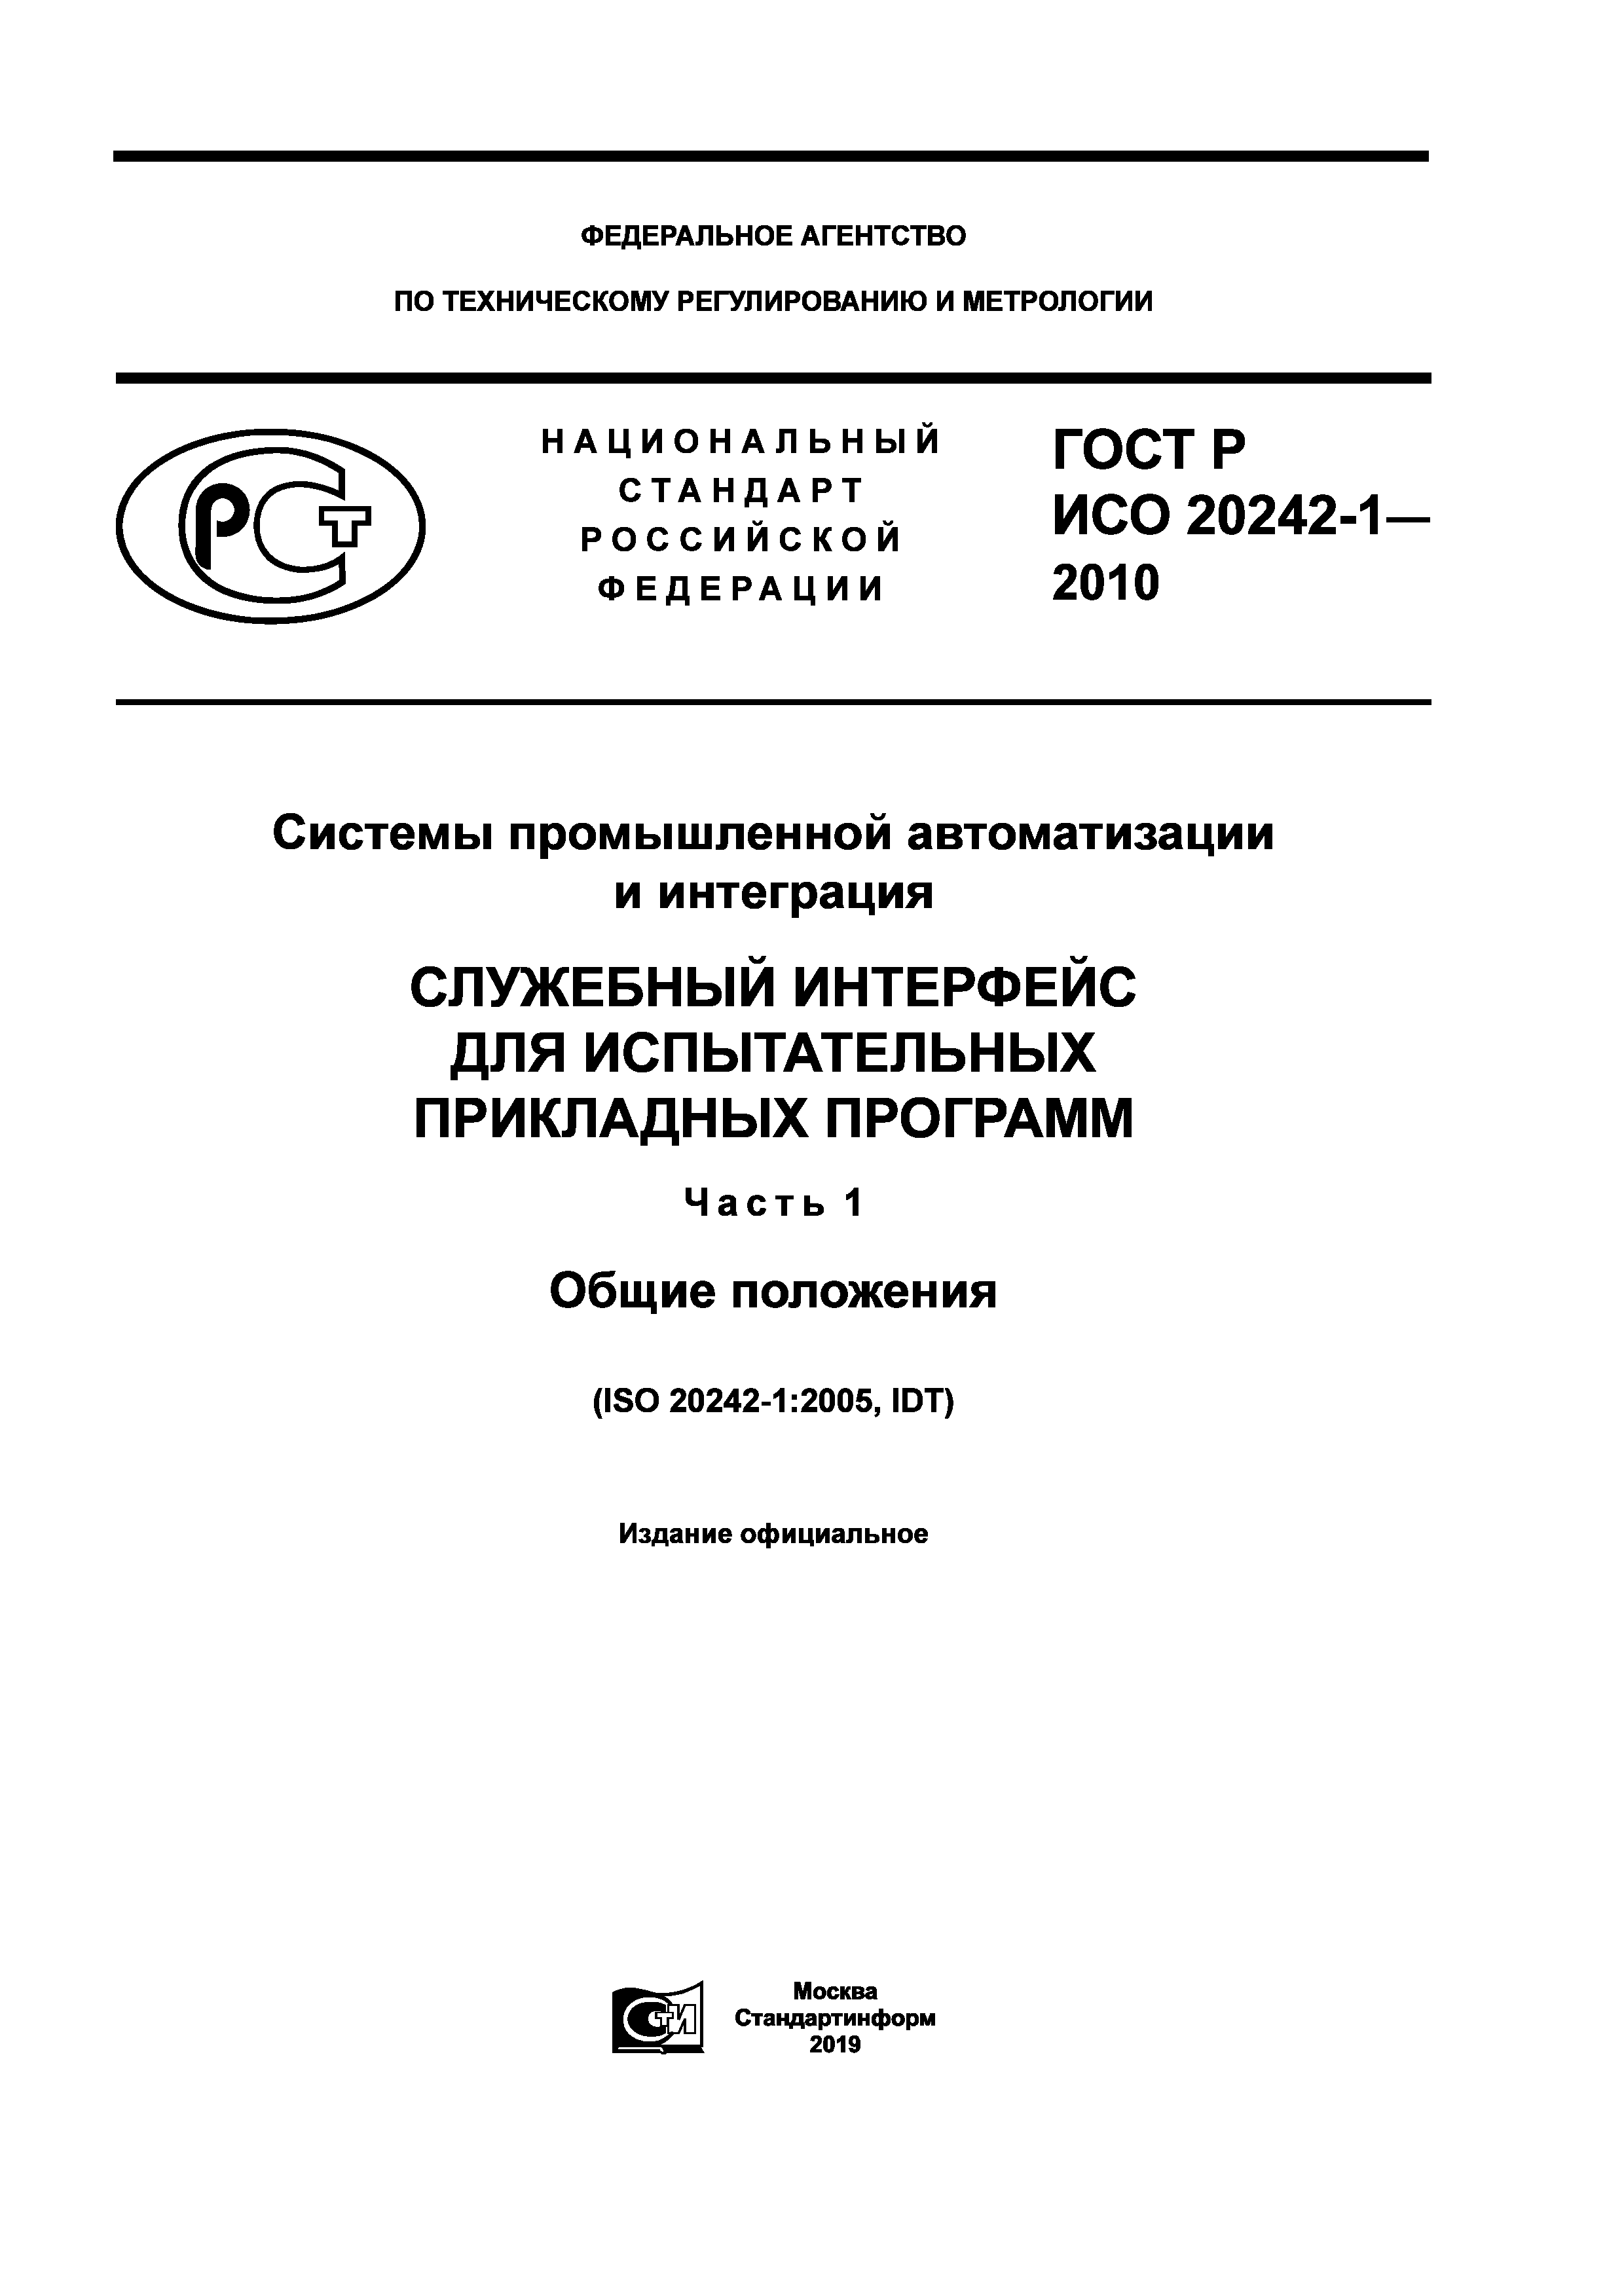 ГОСТ Р ИСО 20242-1-2010